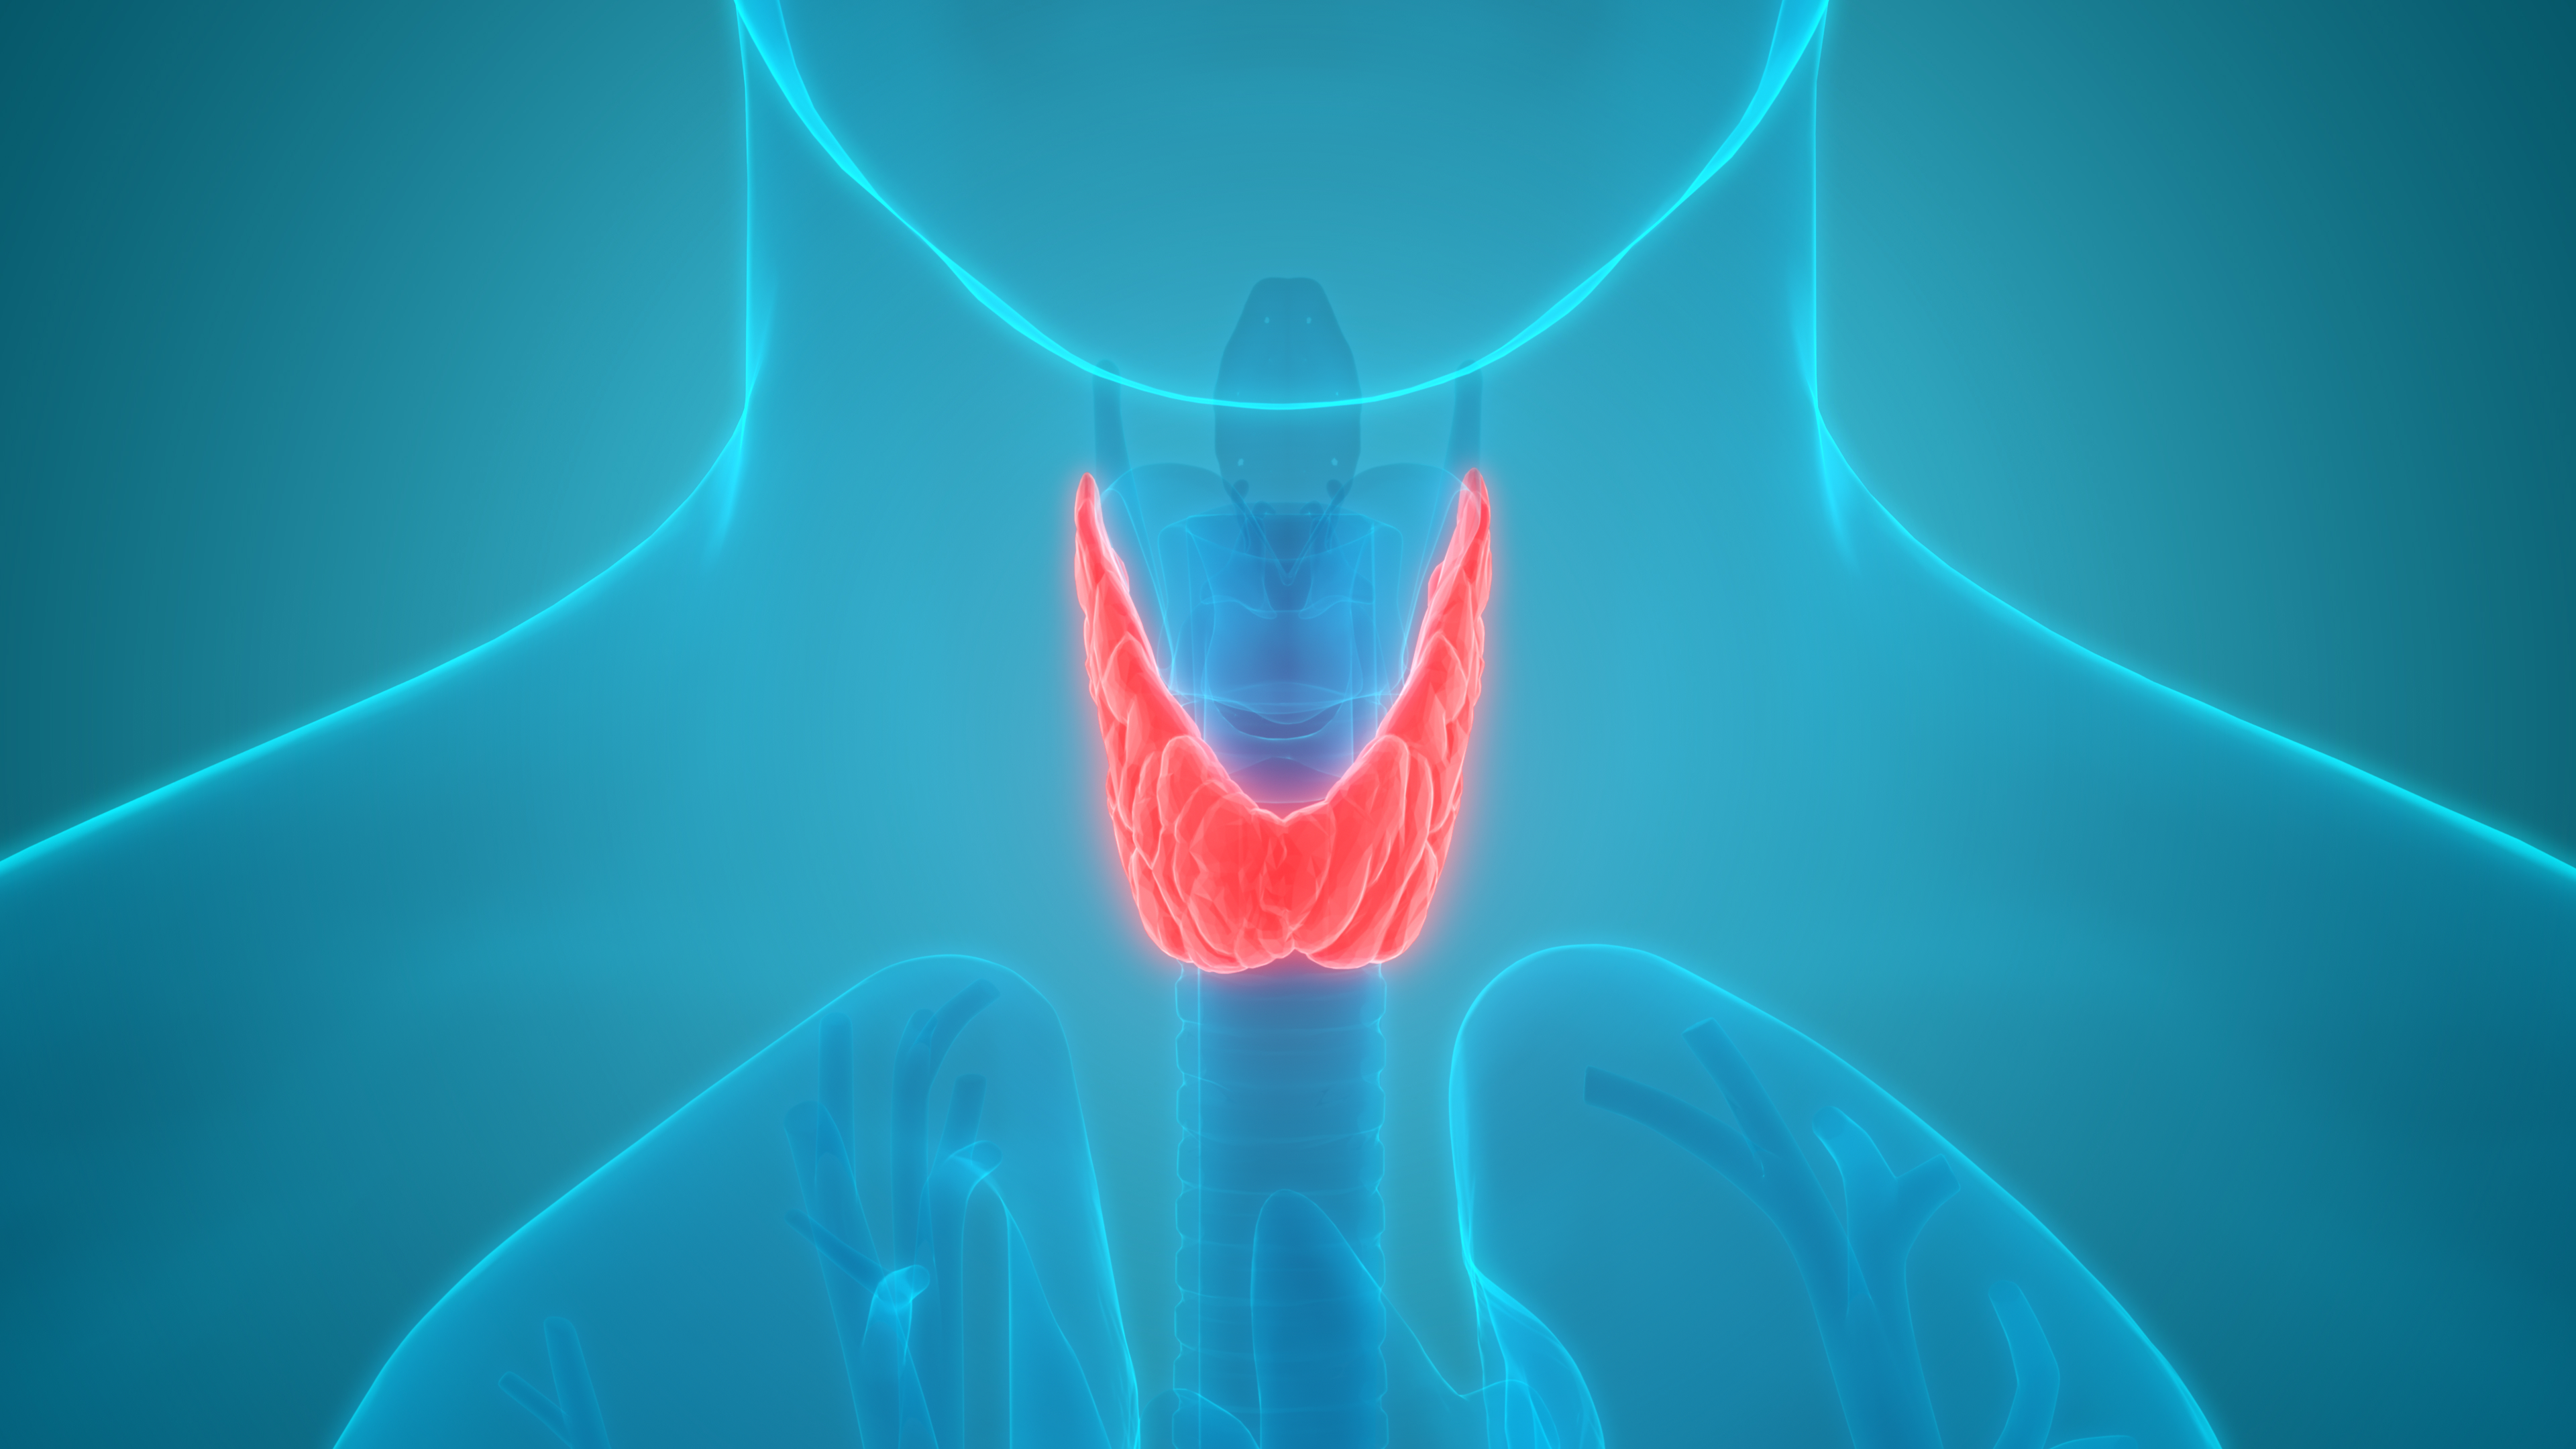 Щитовидная железа биология 8. Изображение щитовидной железы. Здоровая щитовидная железа. Щитовидная железа рисунок.